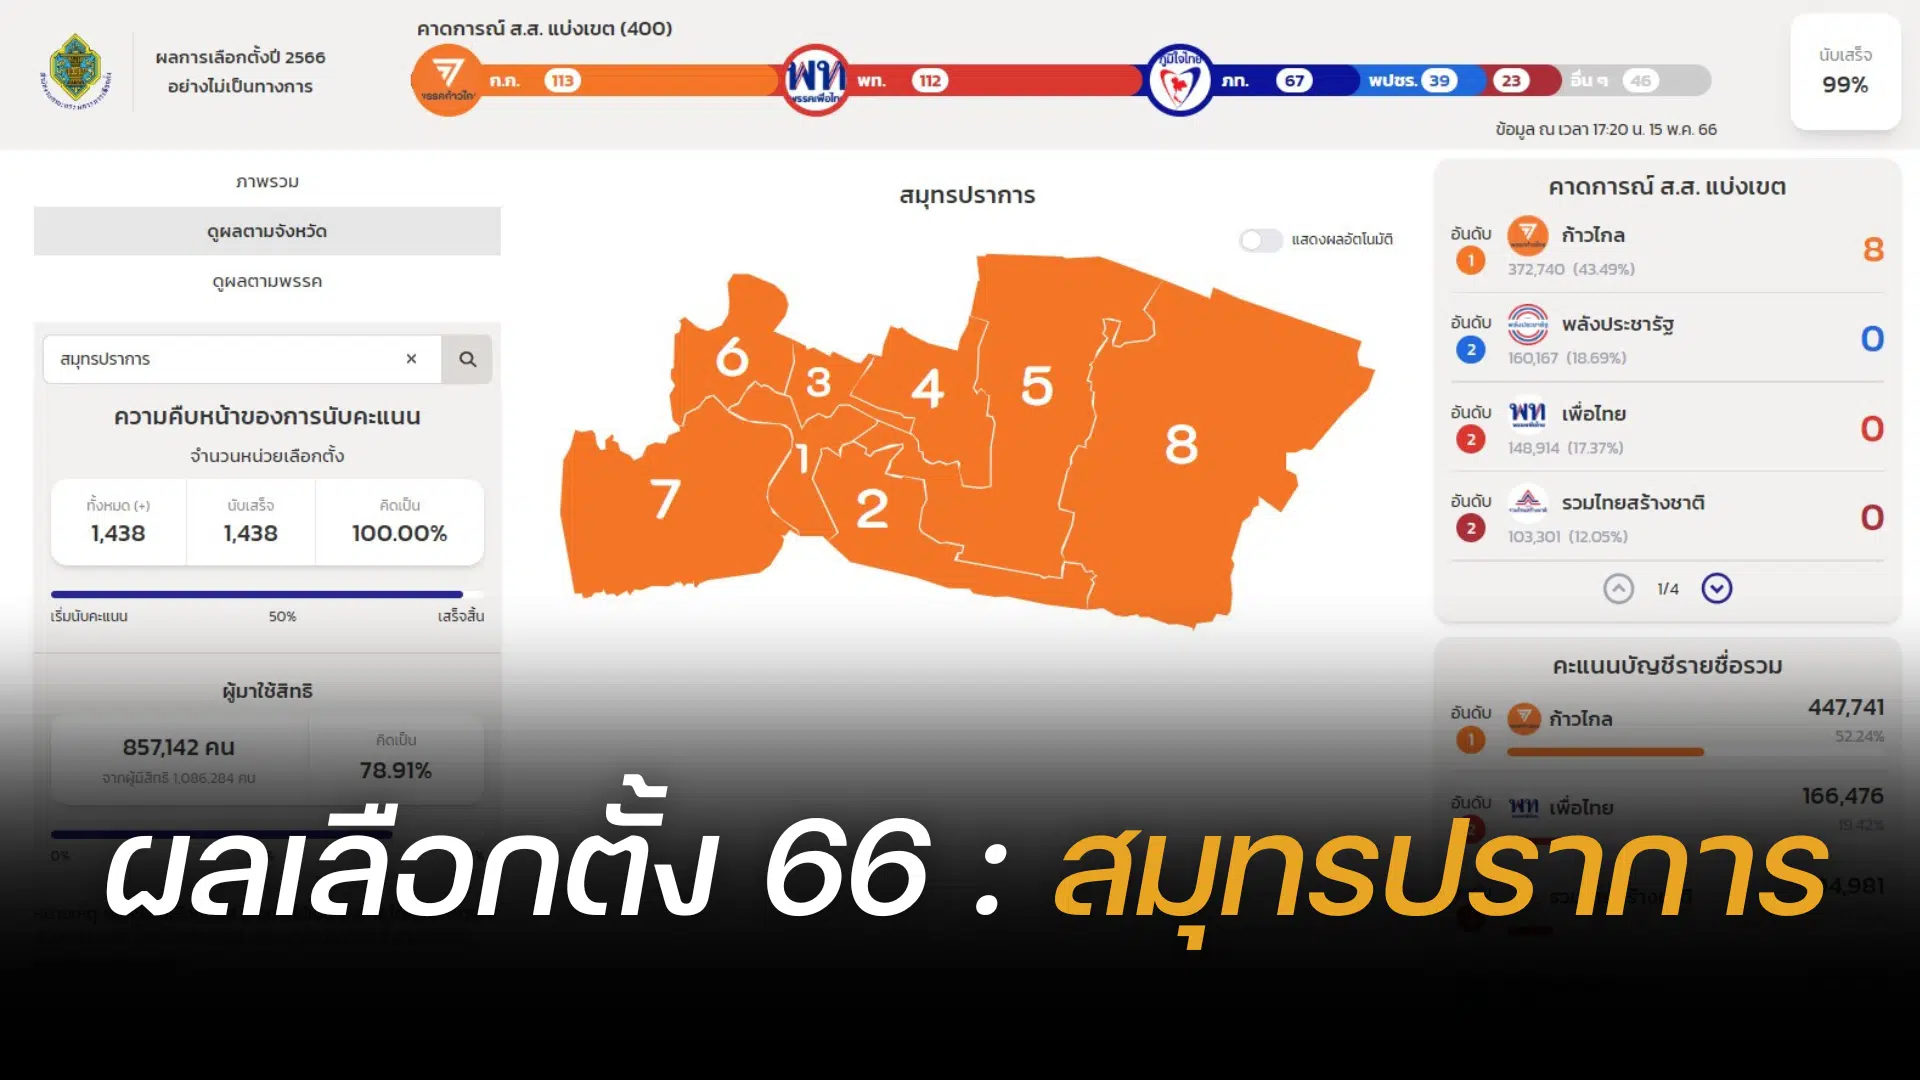 Thailand election 2566 Samut Prakan